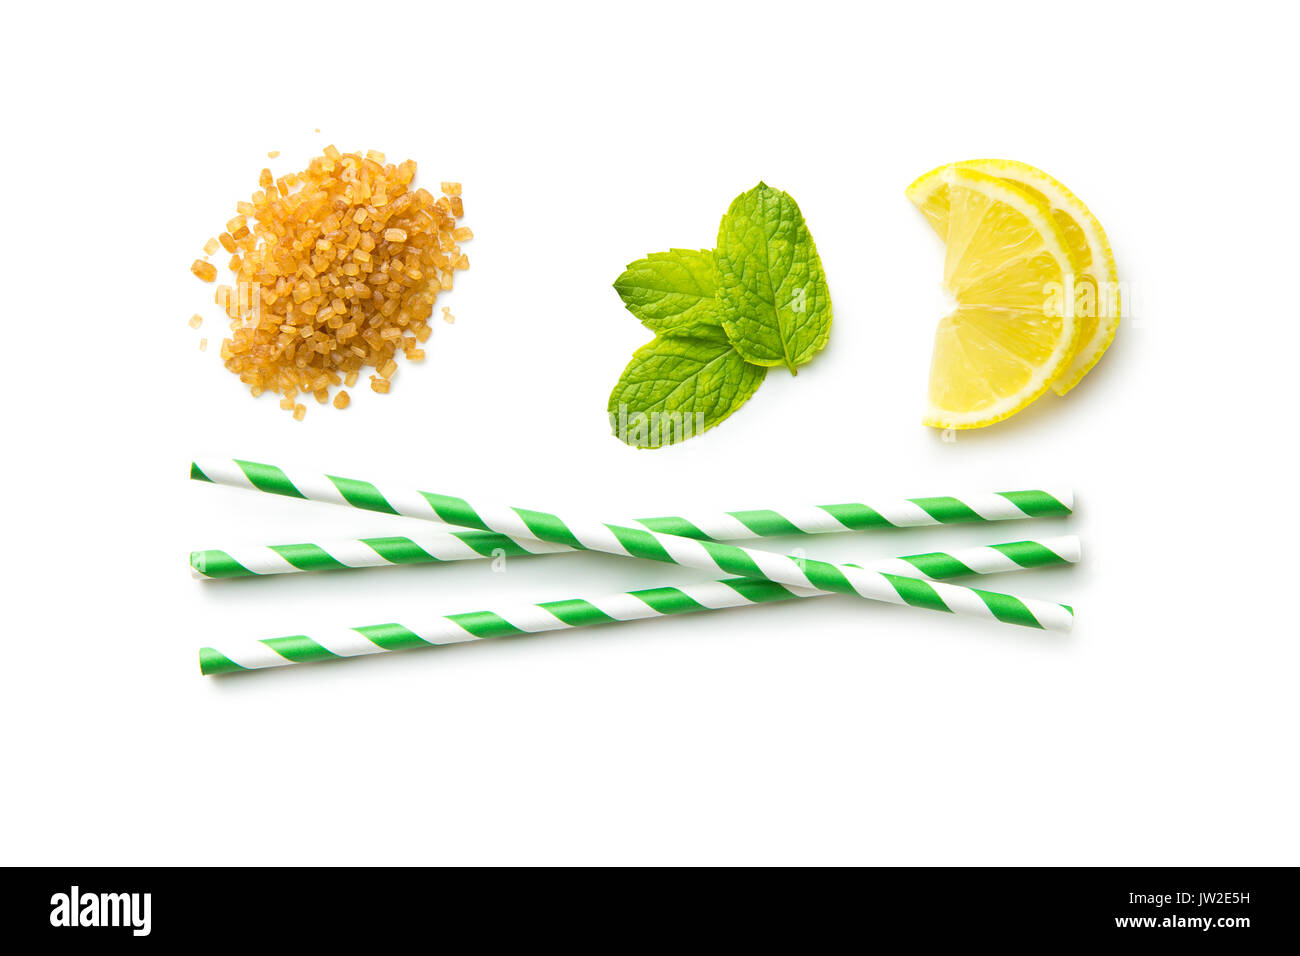 Mojito ingredienti. Limone, menta e zucchero di canna isolati su sfondo bianco. Dolce zucchero, foglie di menta, limone e striato paglia. Foto Stock